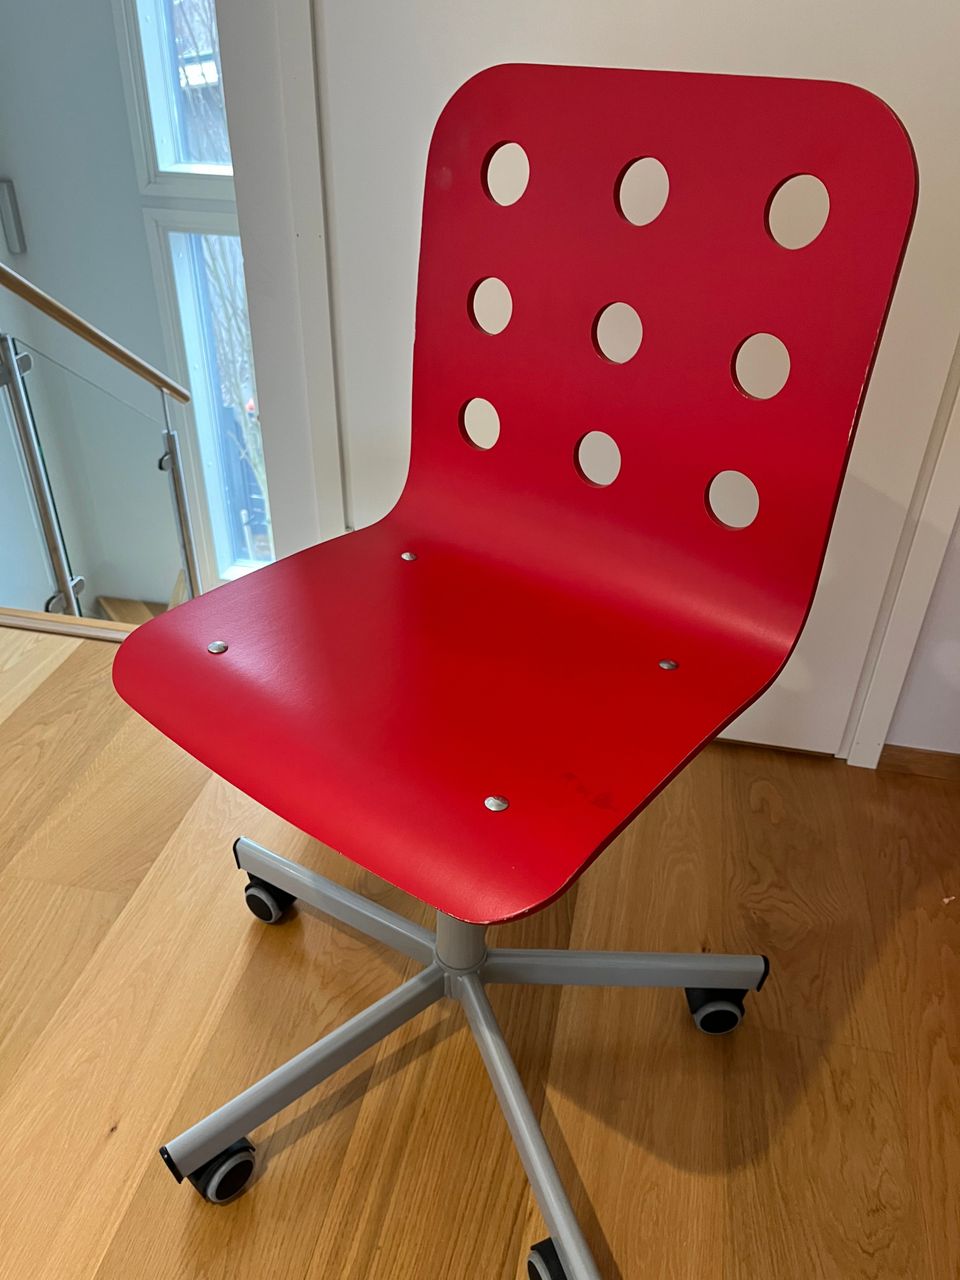 Työtuoli / Kirjoituspöydän tuoli / koulupöydän tuoli